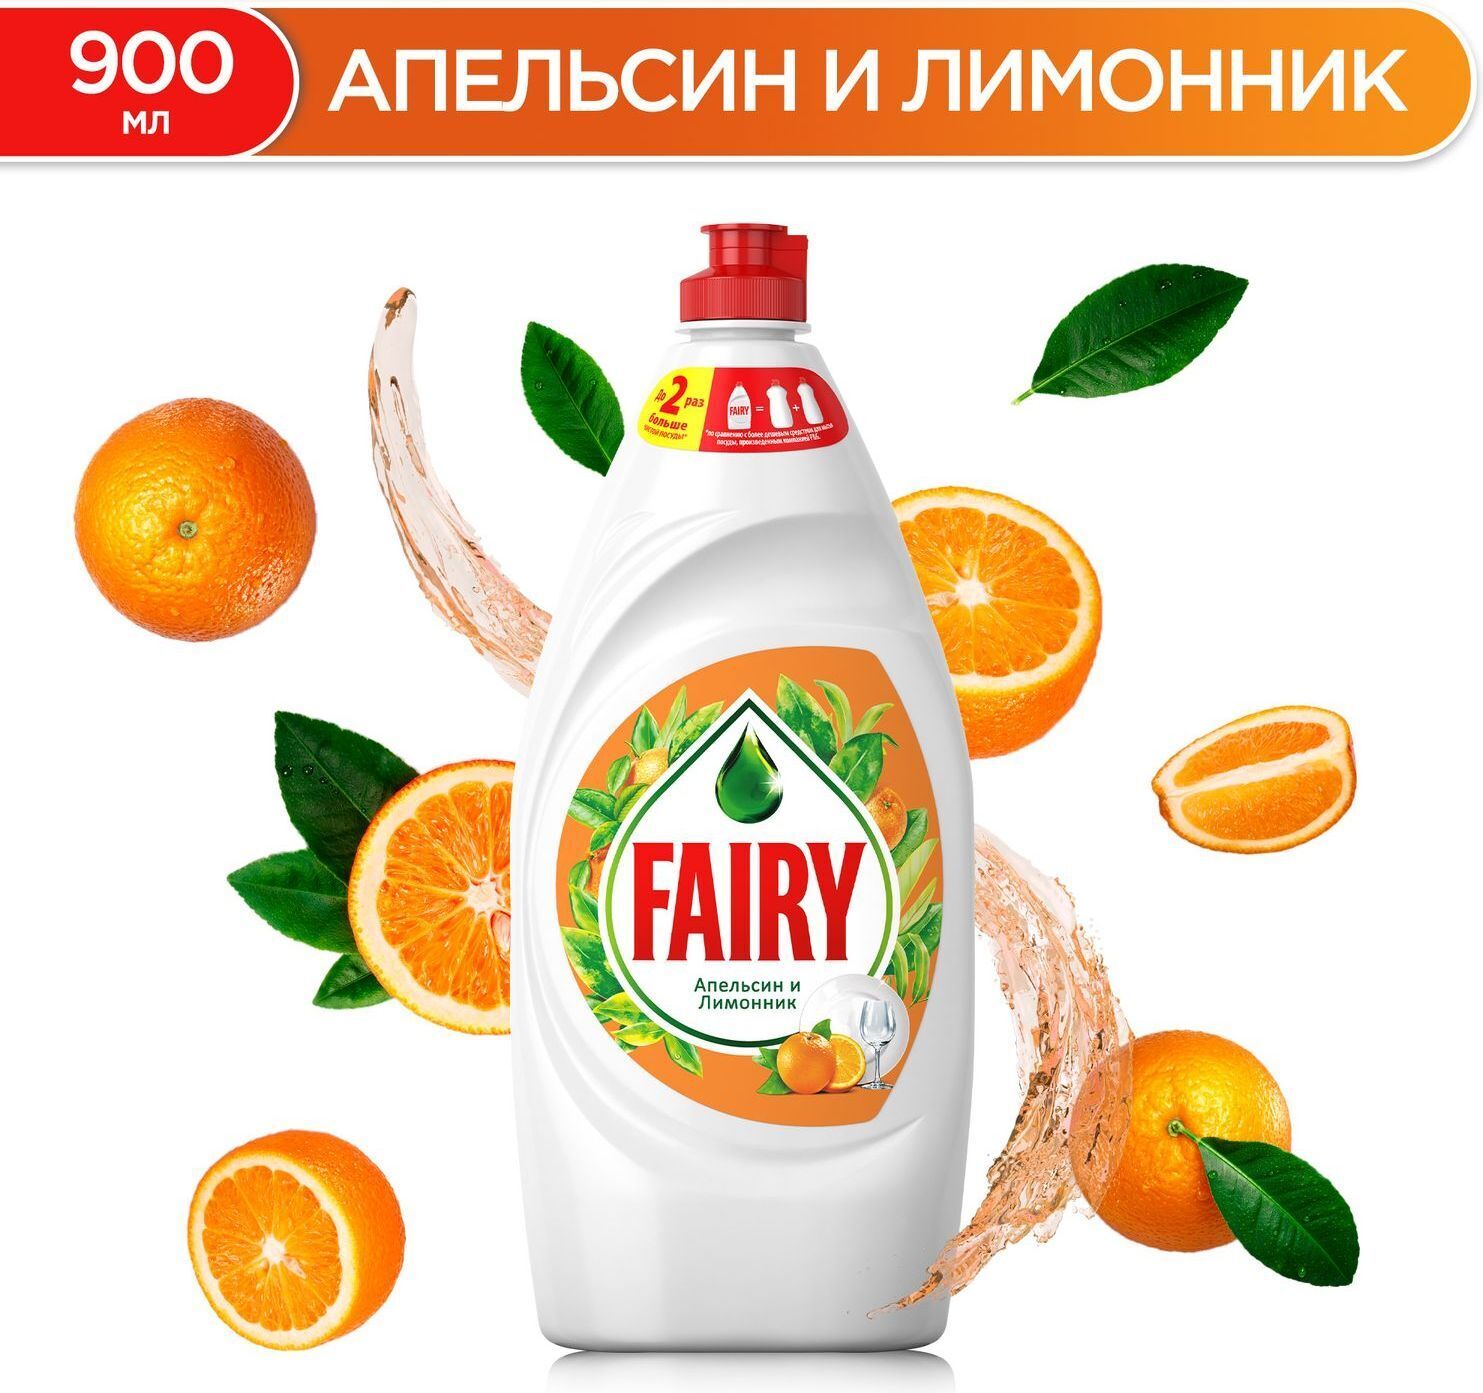 Средство для мытья посуды FAIRY, 900мл, жидкость, апельсин и лимонник (00000370) - фото 1